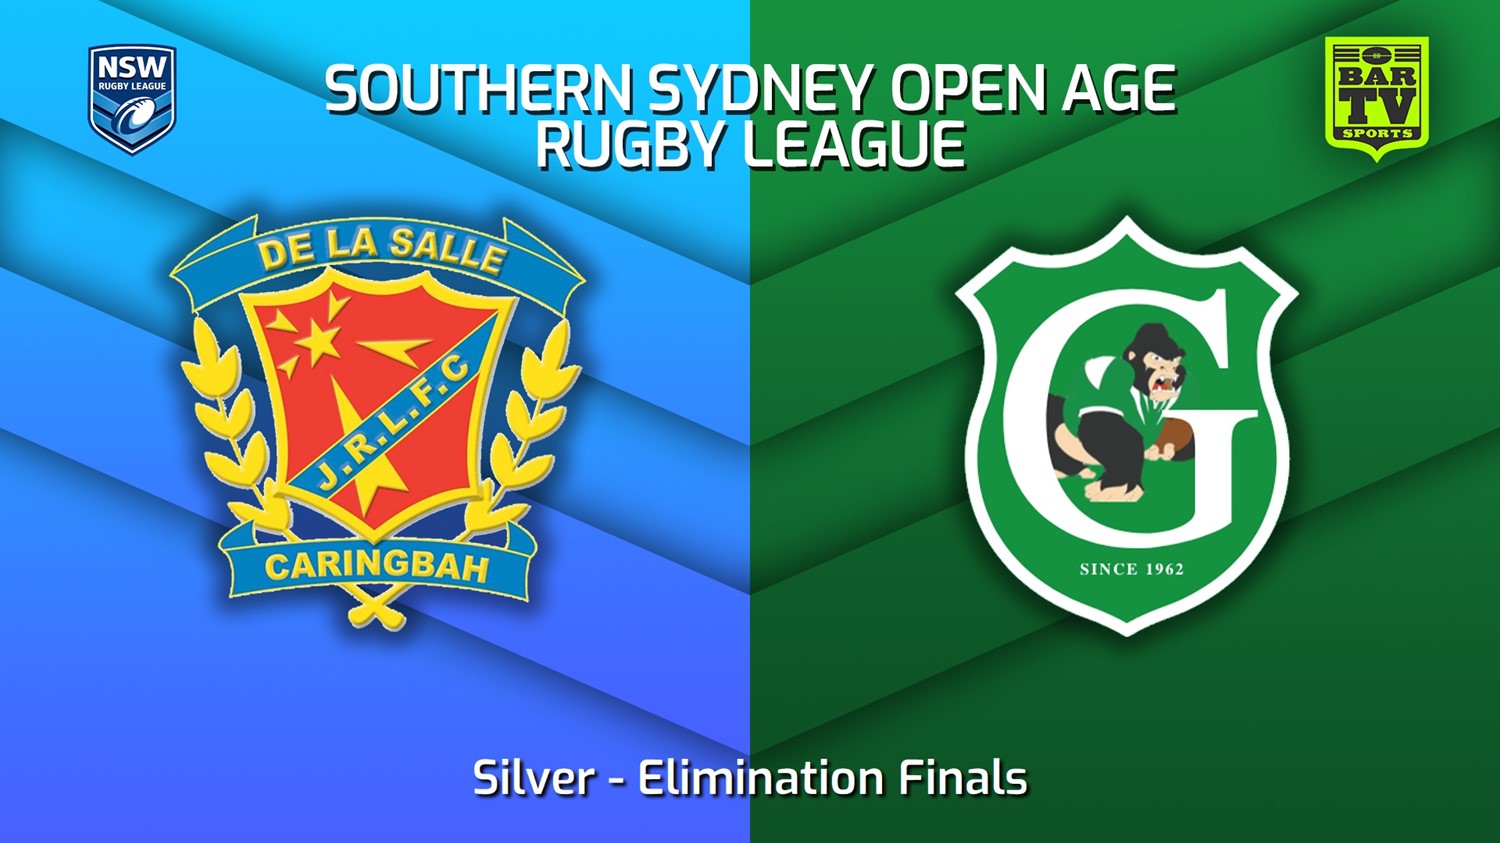 230812-S. Sydney Open Elimination Finals - Silver A - De La Salle v Gymea Gorillas Slate Image